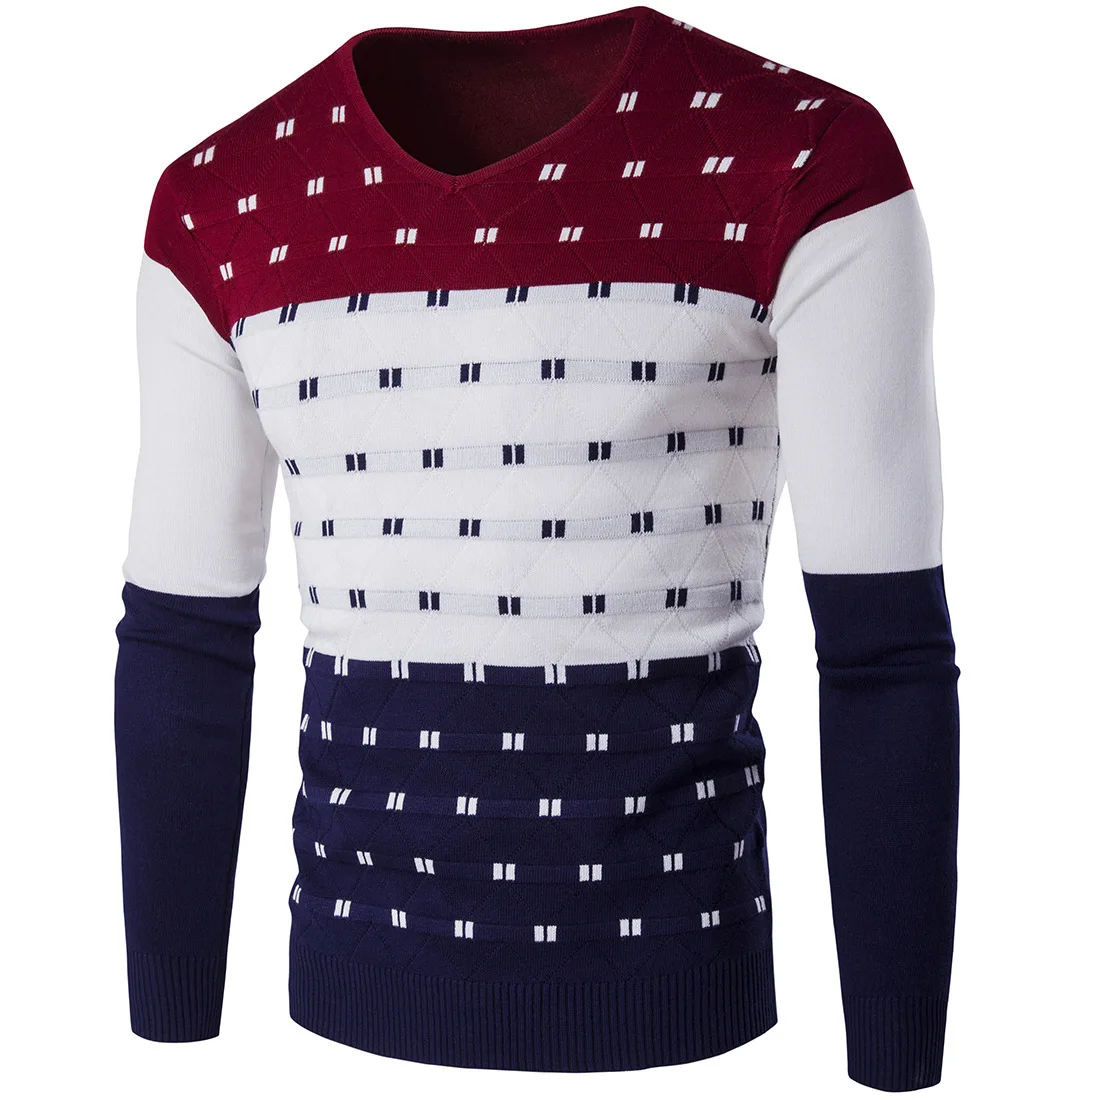 5 цветов, полосатый мужской свитер, теплый, длинный рукав, v-образный вырез, зимняя одежда для мужчин, модный, облегающий, с принтом, пуловер, свитер